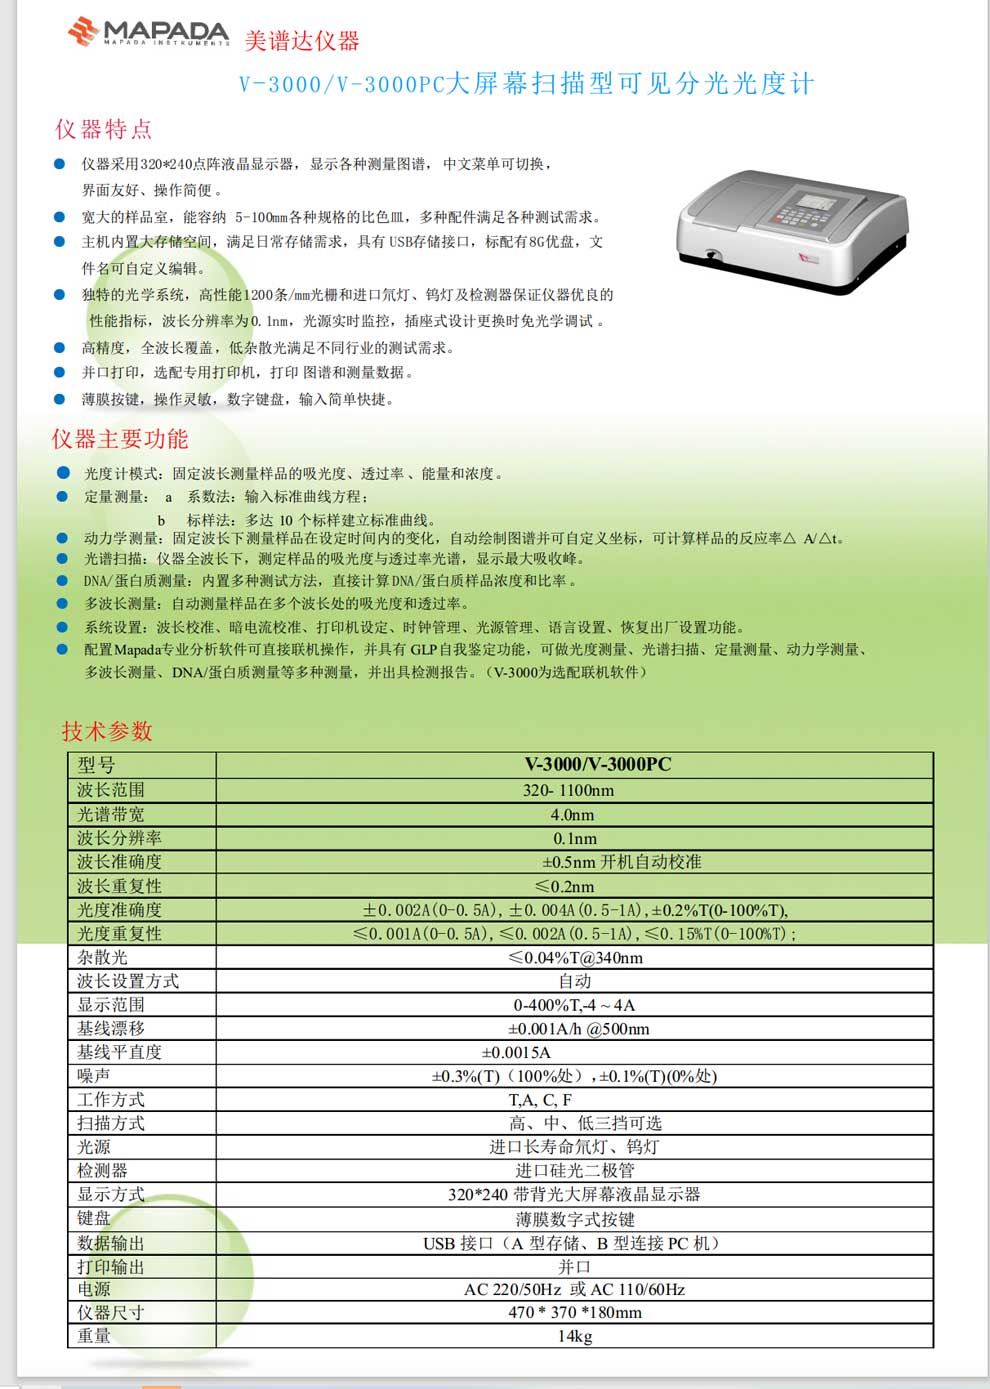 V-3000-V-3000PC-彩页.jpg